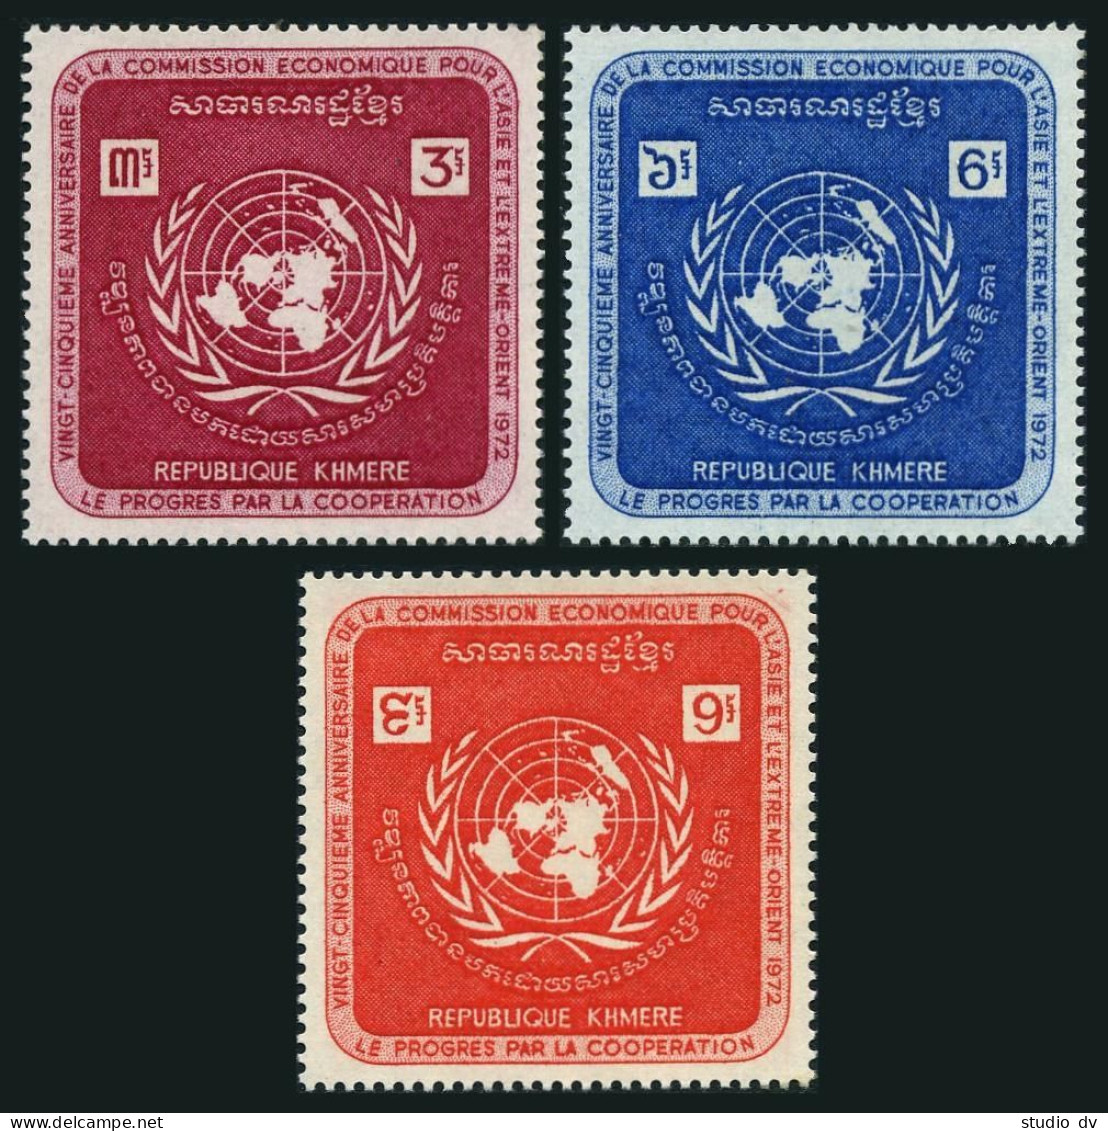 Cambodia 278-280,MNH.Michel 321-323. UN Economic Commission ECAFE,1972. - Cambodge